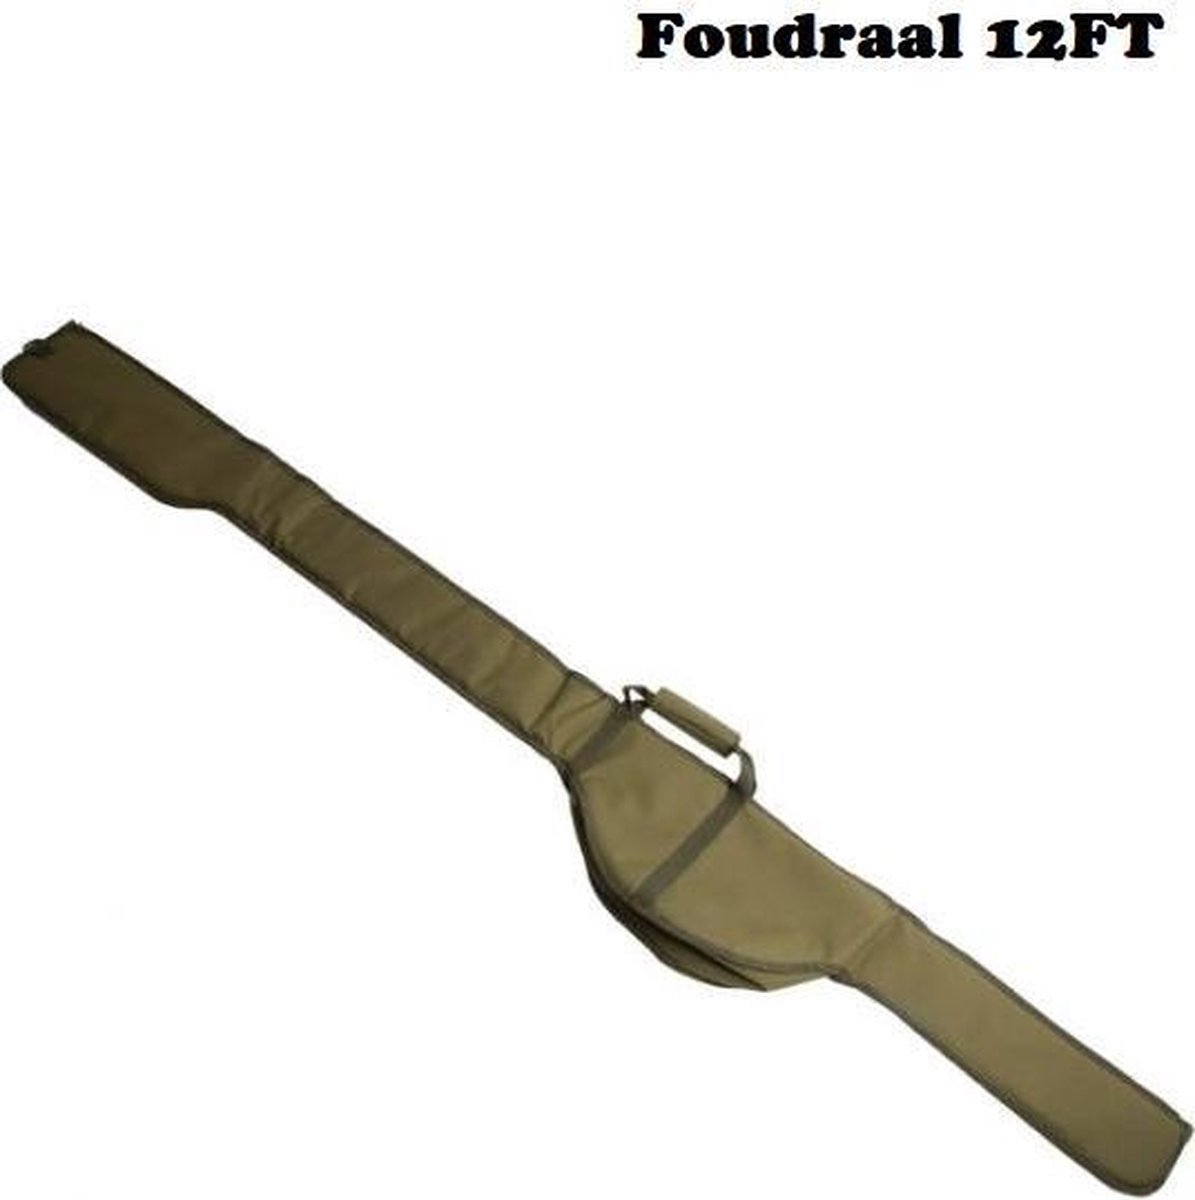 Foudraal -Sight -Rodsleeve -12ft - Groen - Sight